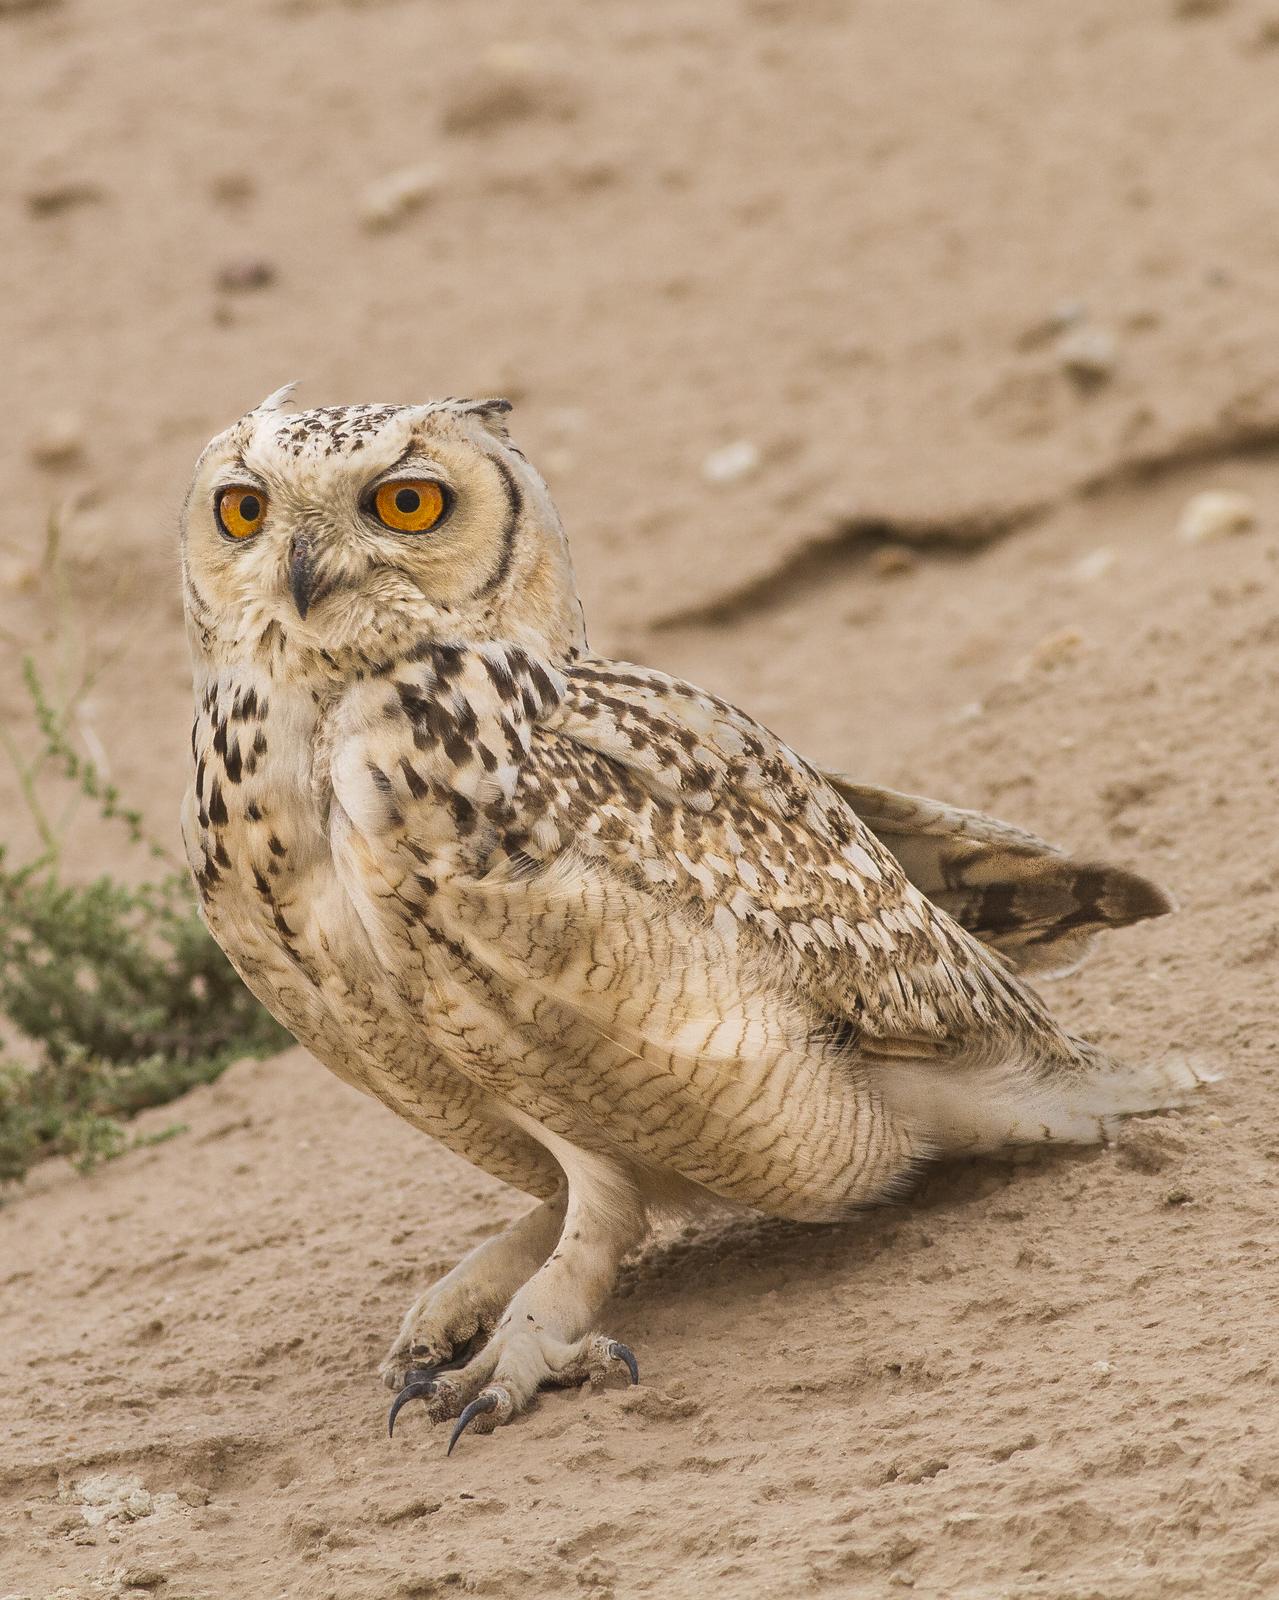 Pharaoh Eagle-Owl Photo by Humoud Alshayji